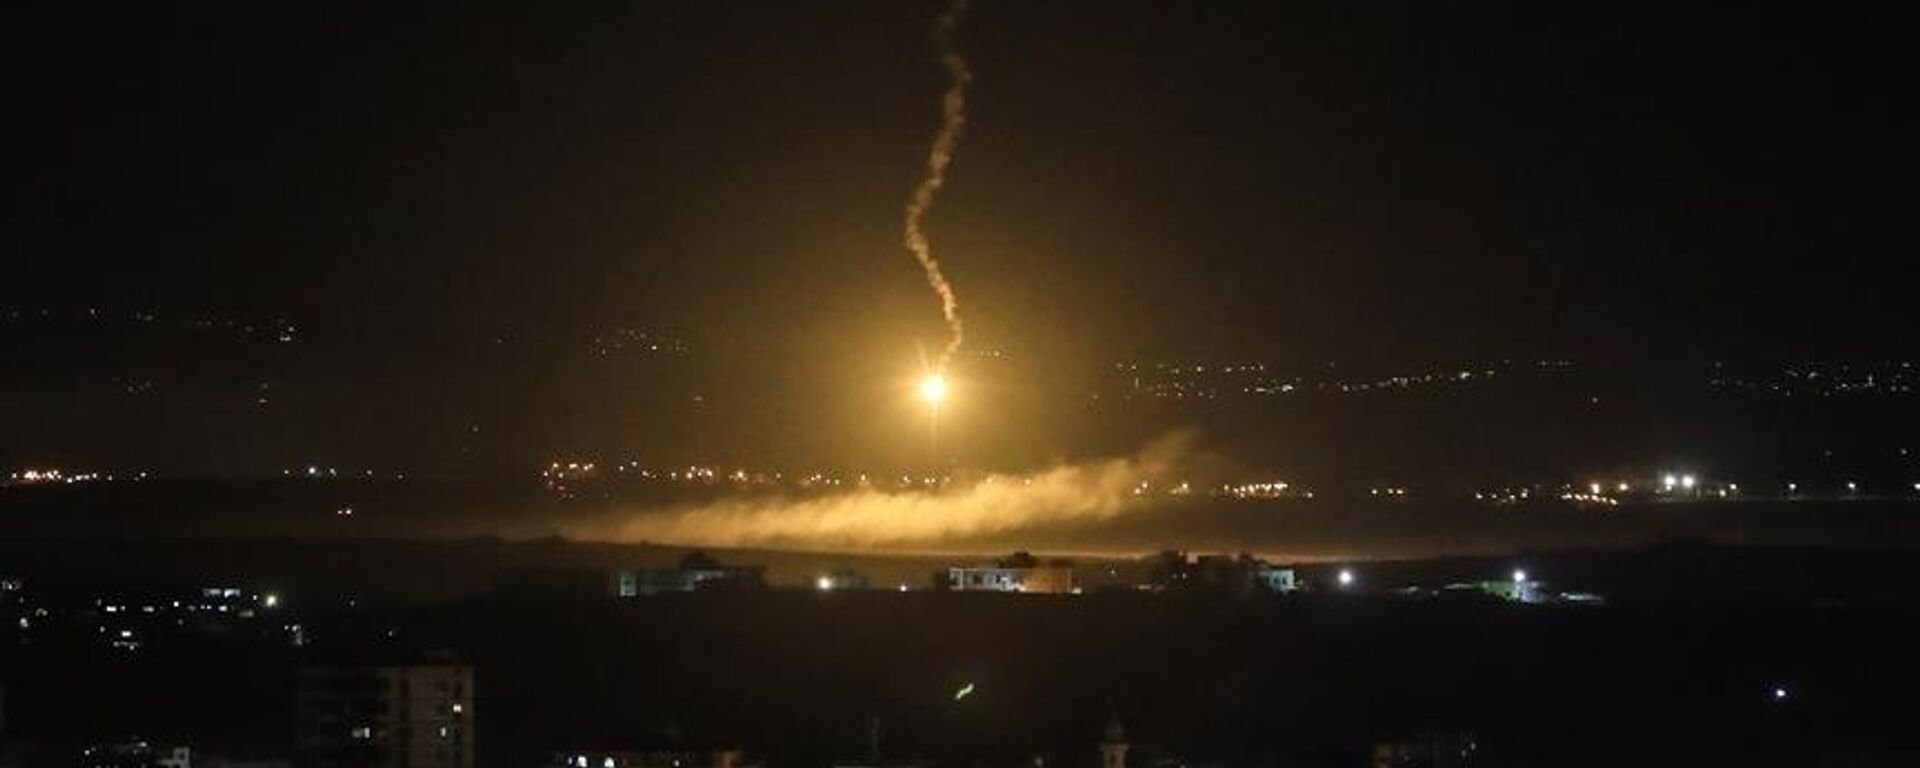 Suriye'nin başkenti Şam'da bazı noktalara İsrail tarafından hava saldırısı gerçekleştirildiği öne sürüldü. Hava savunma sistemlerinin saldırıları başarıyla püskürttüğü bildirildi.  - Sputnik Türkiye, 1920, 07.06.2022